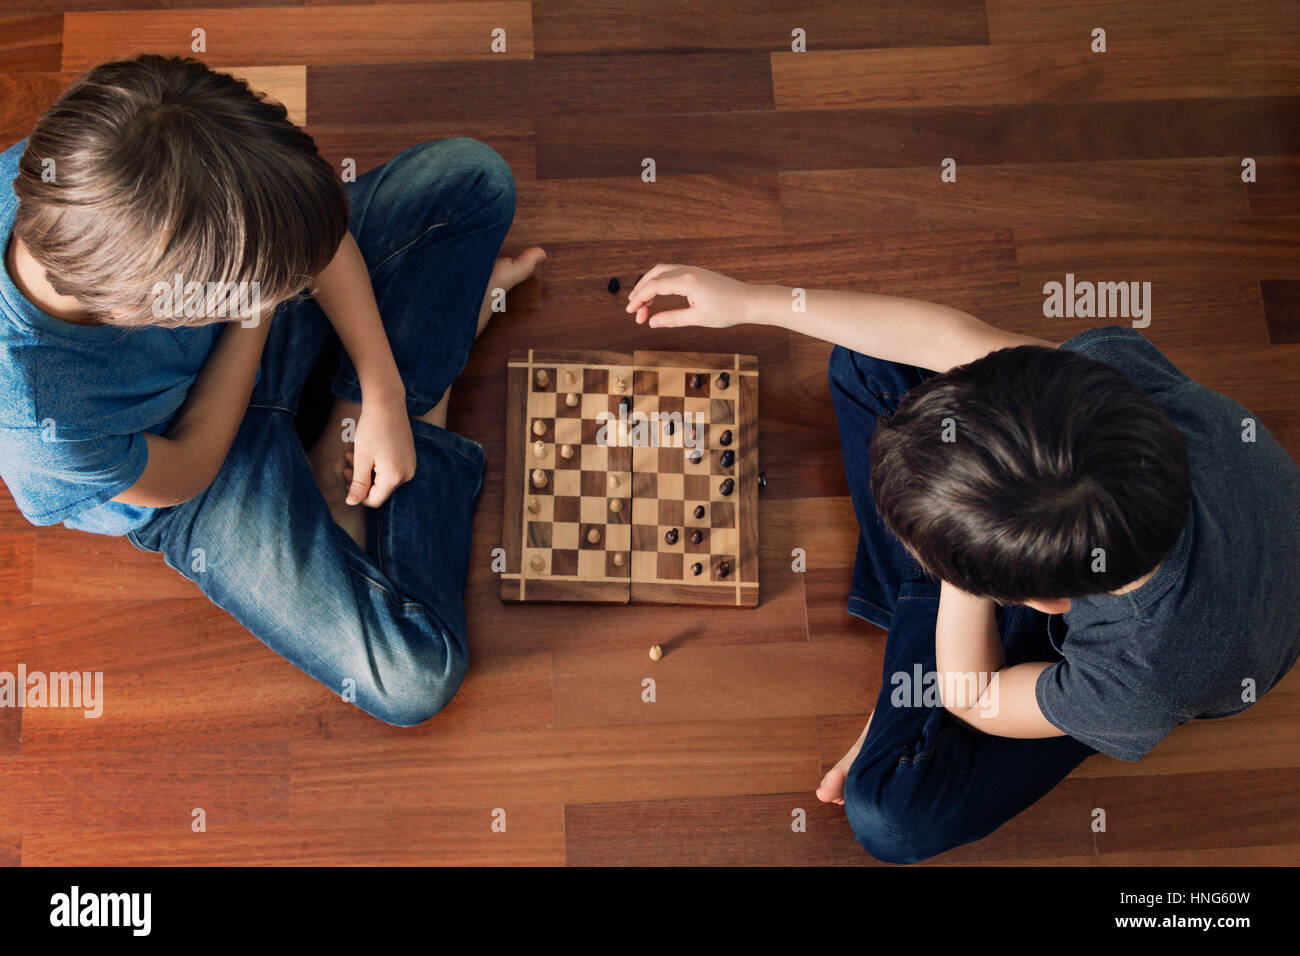 Kinder spielen Schach sitzen auf Holzboden. Ansicht von oben. Spiel, Bildung, Lebensstil, Freizeit-Konzept. Getönten Bild Stockfoto